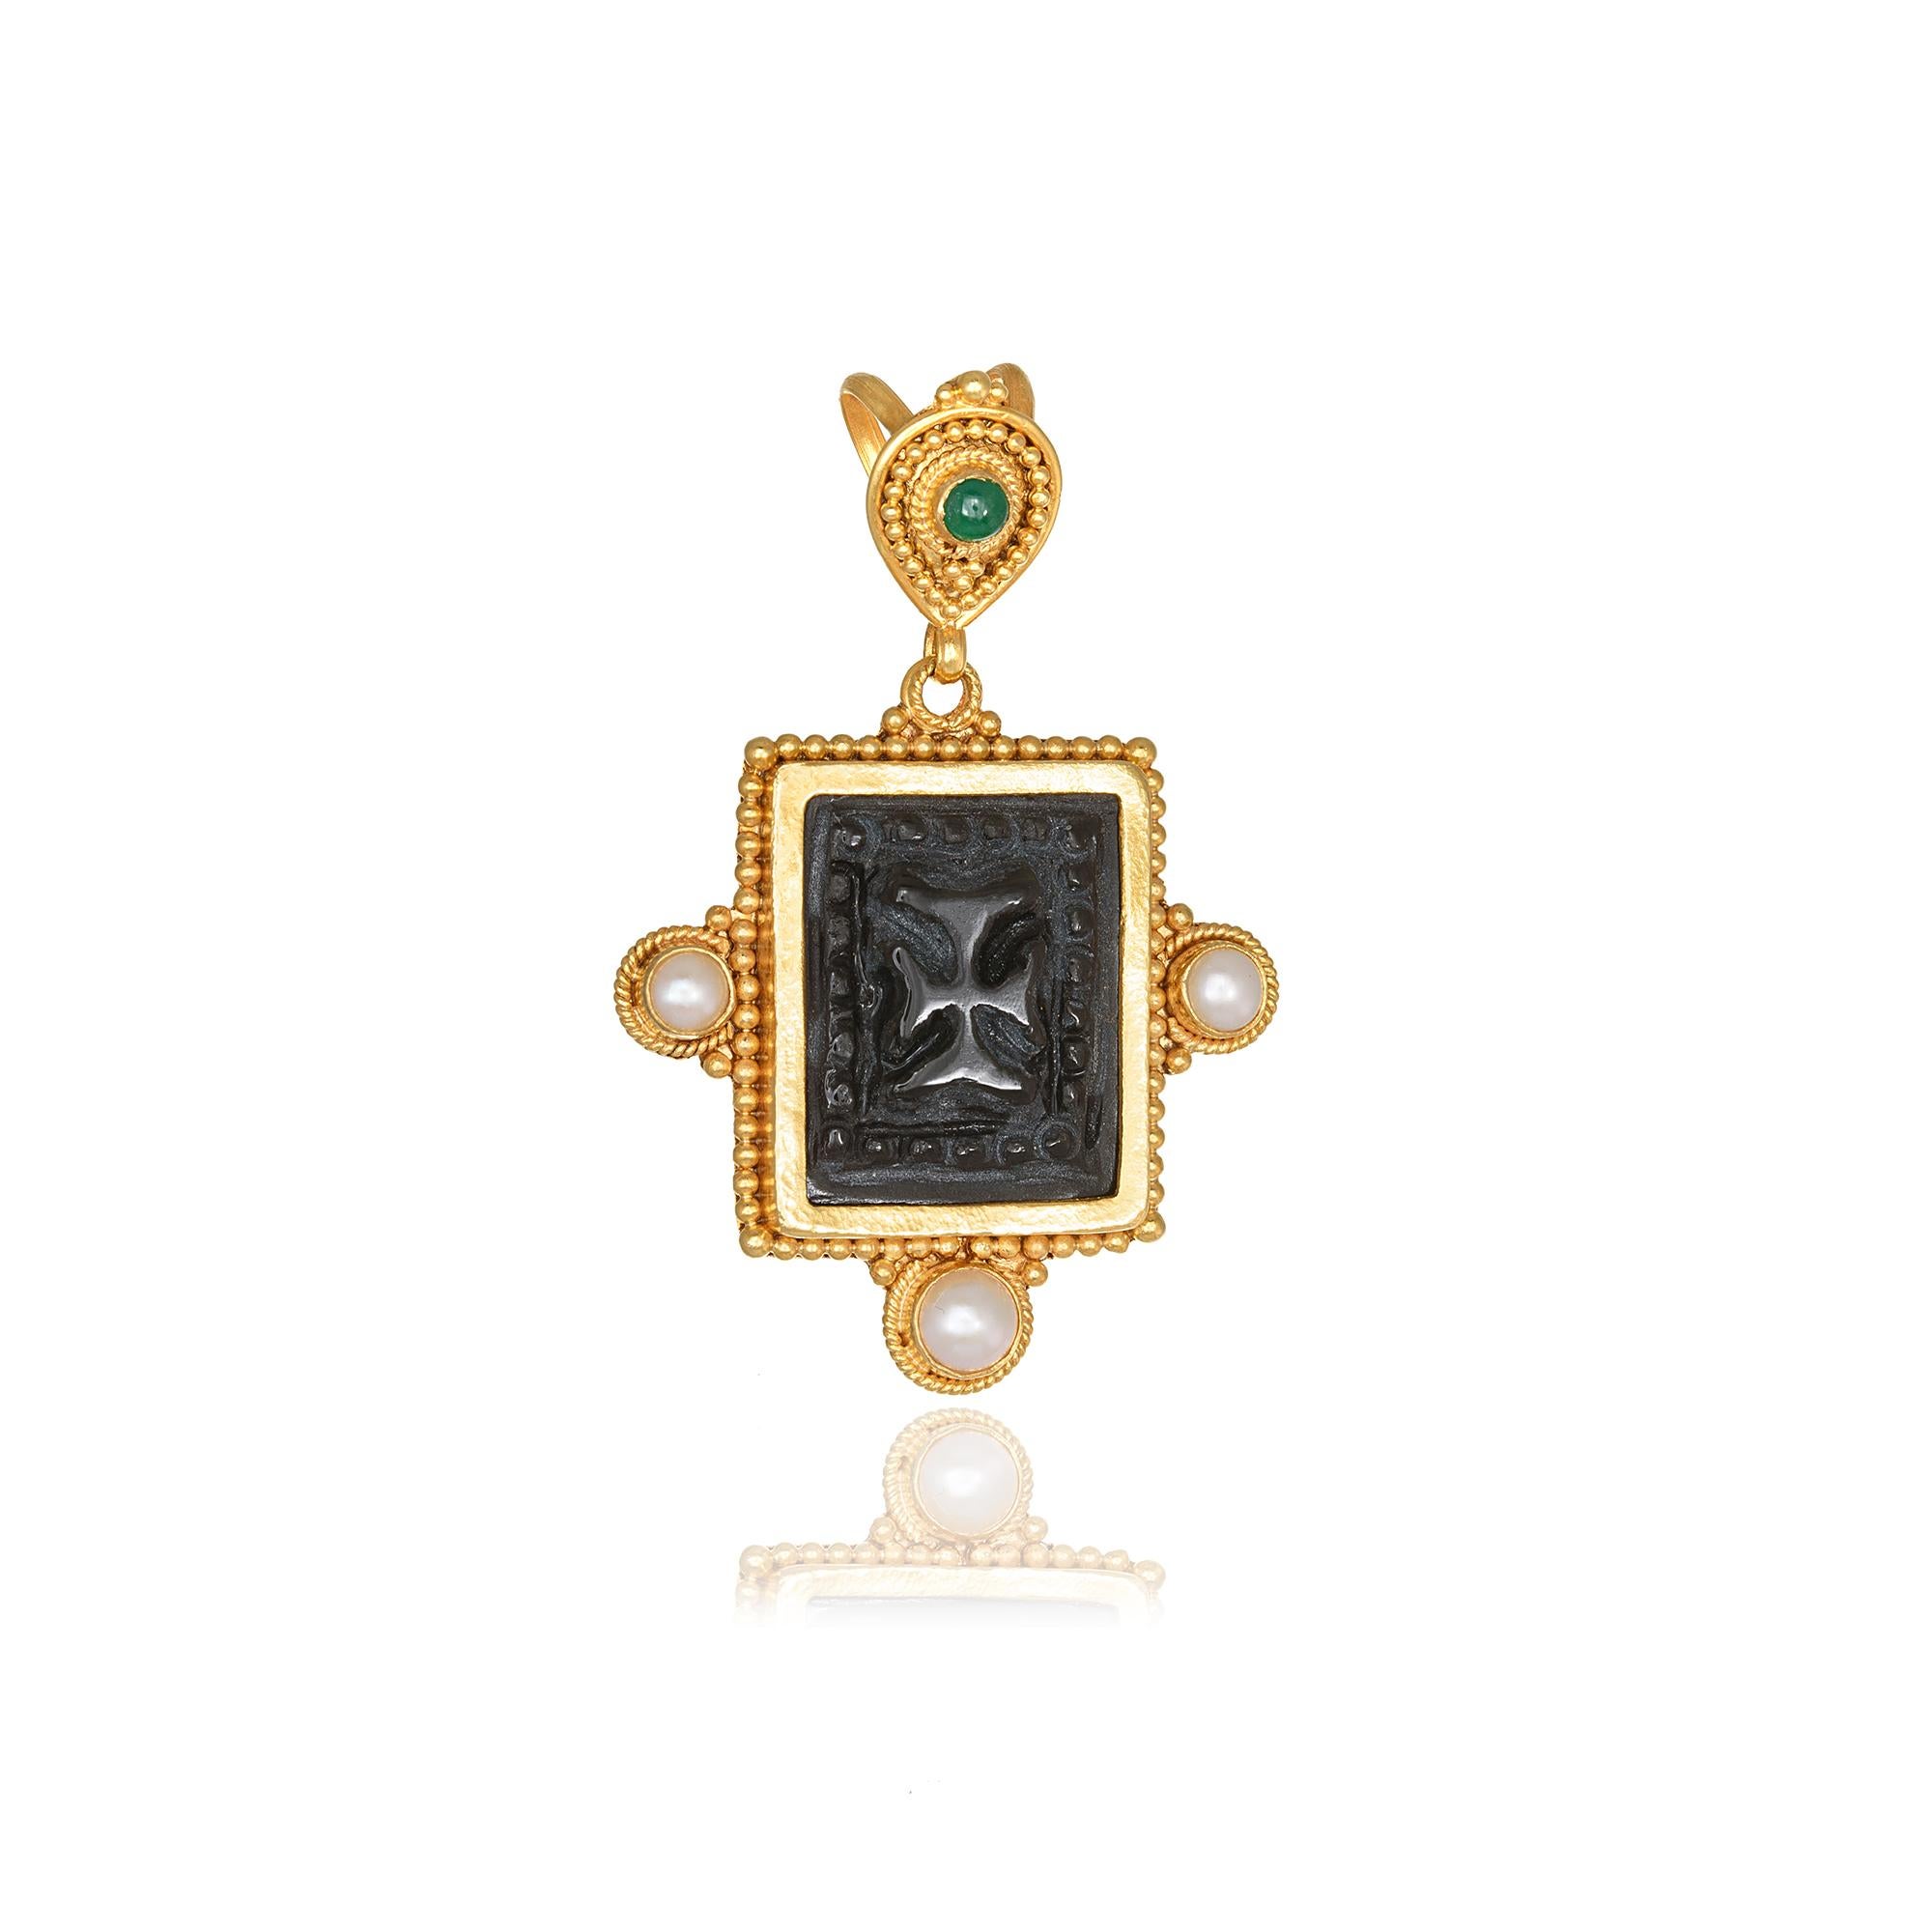 Obsidian-Anhänger mit einem handgeschnitzten byzantinischen Kreuz, handgefertigt mit Granulation in 22Kt Gelbgold, mit drei Perlen und einem runden Smaragd. Dieser atemberaubende Anhänger ist mit der traditionellen Technik der Granulation und